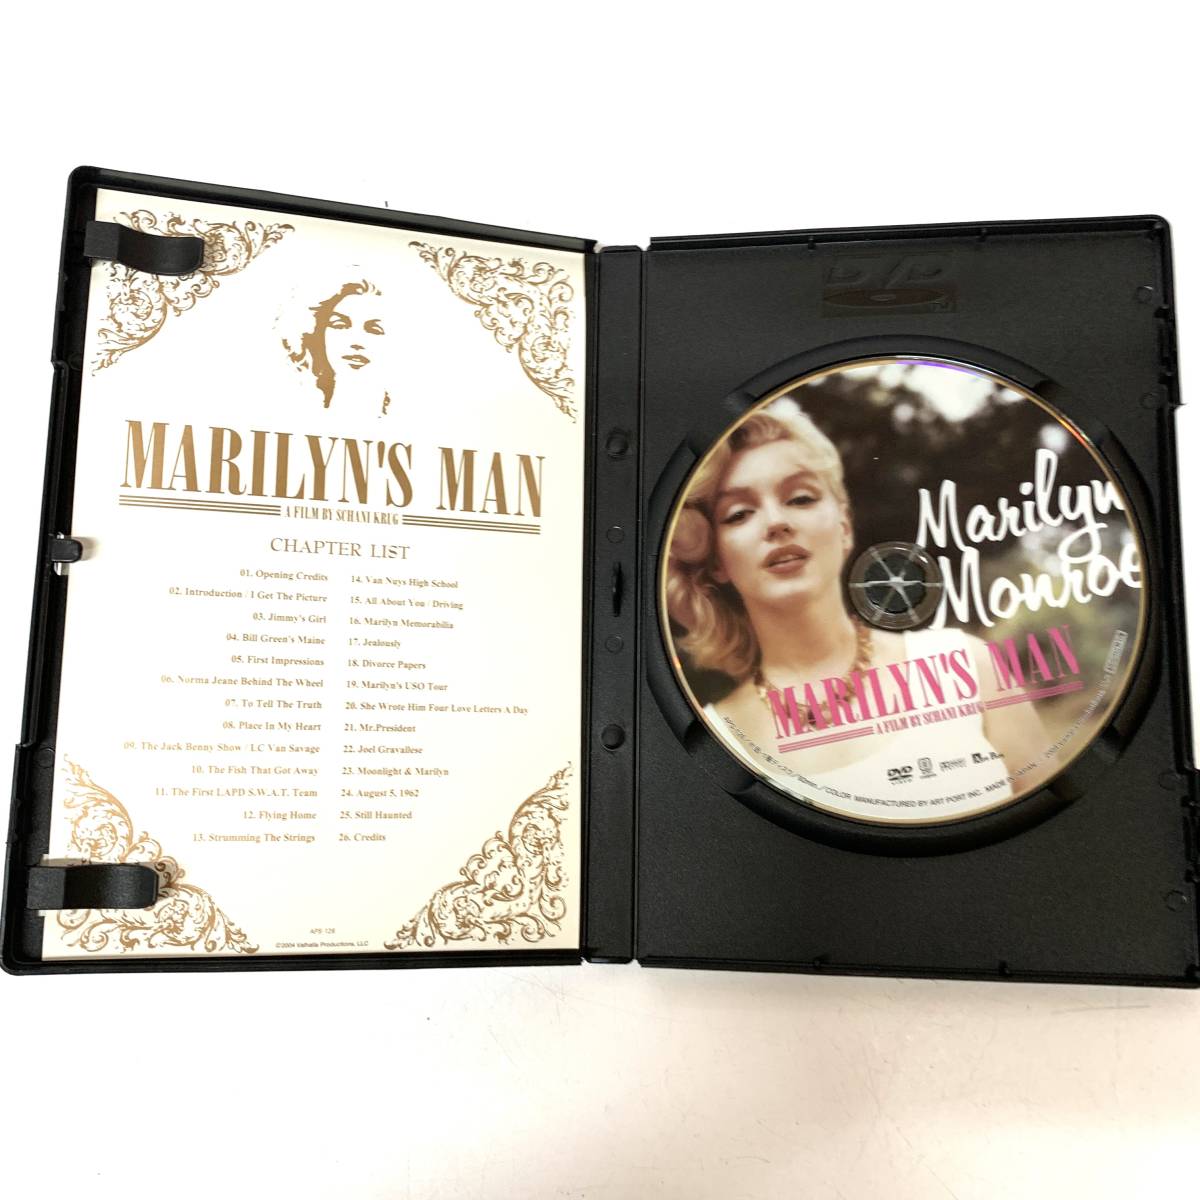  used DVD Marilyn z* man Marilyn * Monroe. genuine real DVD Marilyn * Monroe 